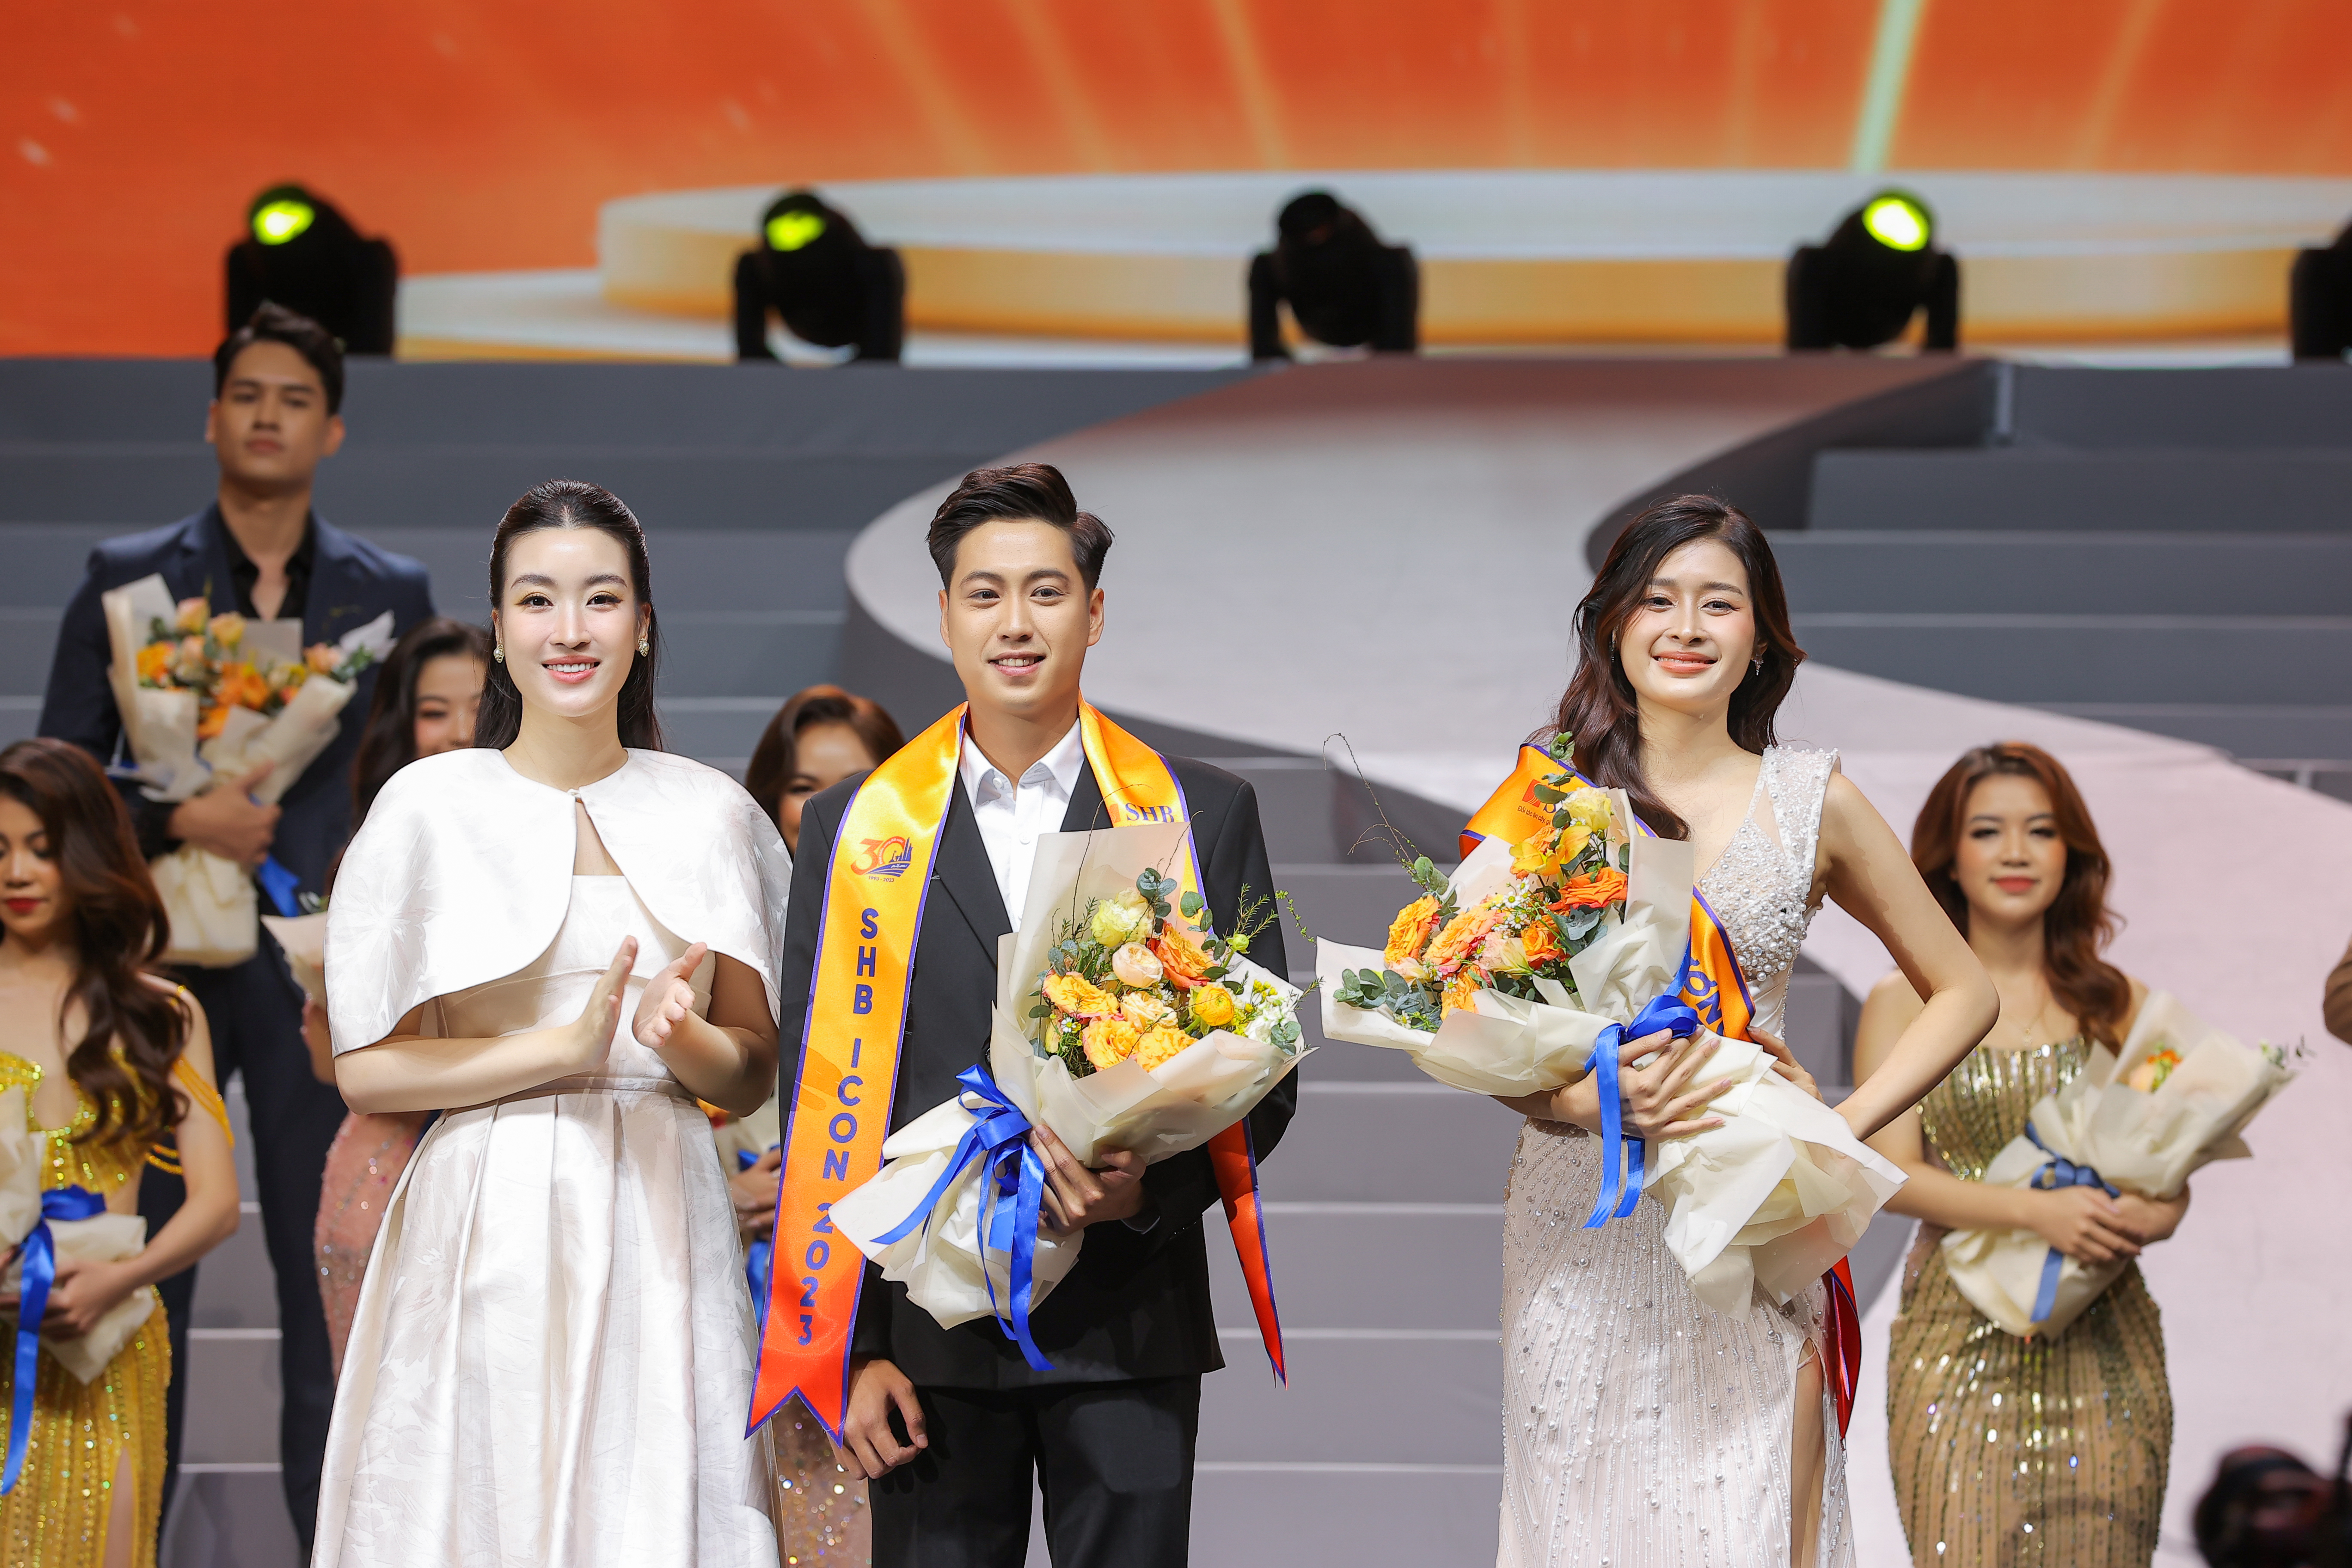 Hoa hậu Đỗ Mỹ Linh trao giải cho Nam vương, Hoa khôi cuộc thi. Ảnh: Nhân vật cung cấp